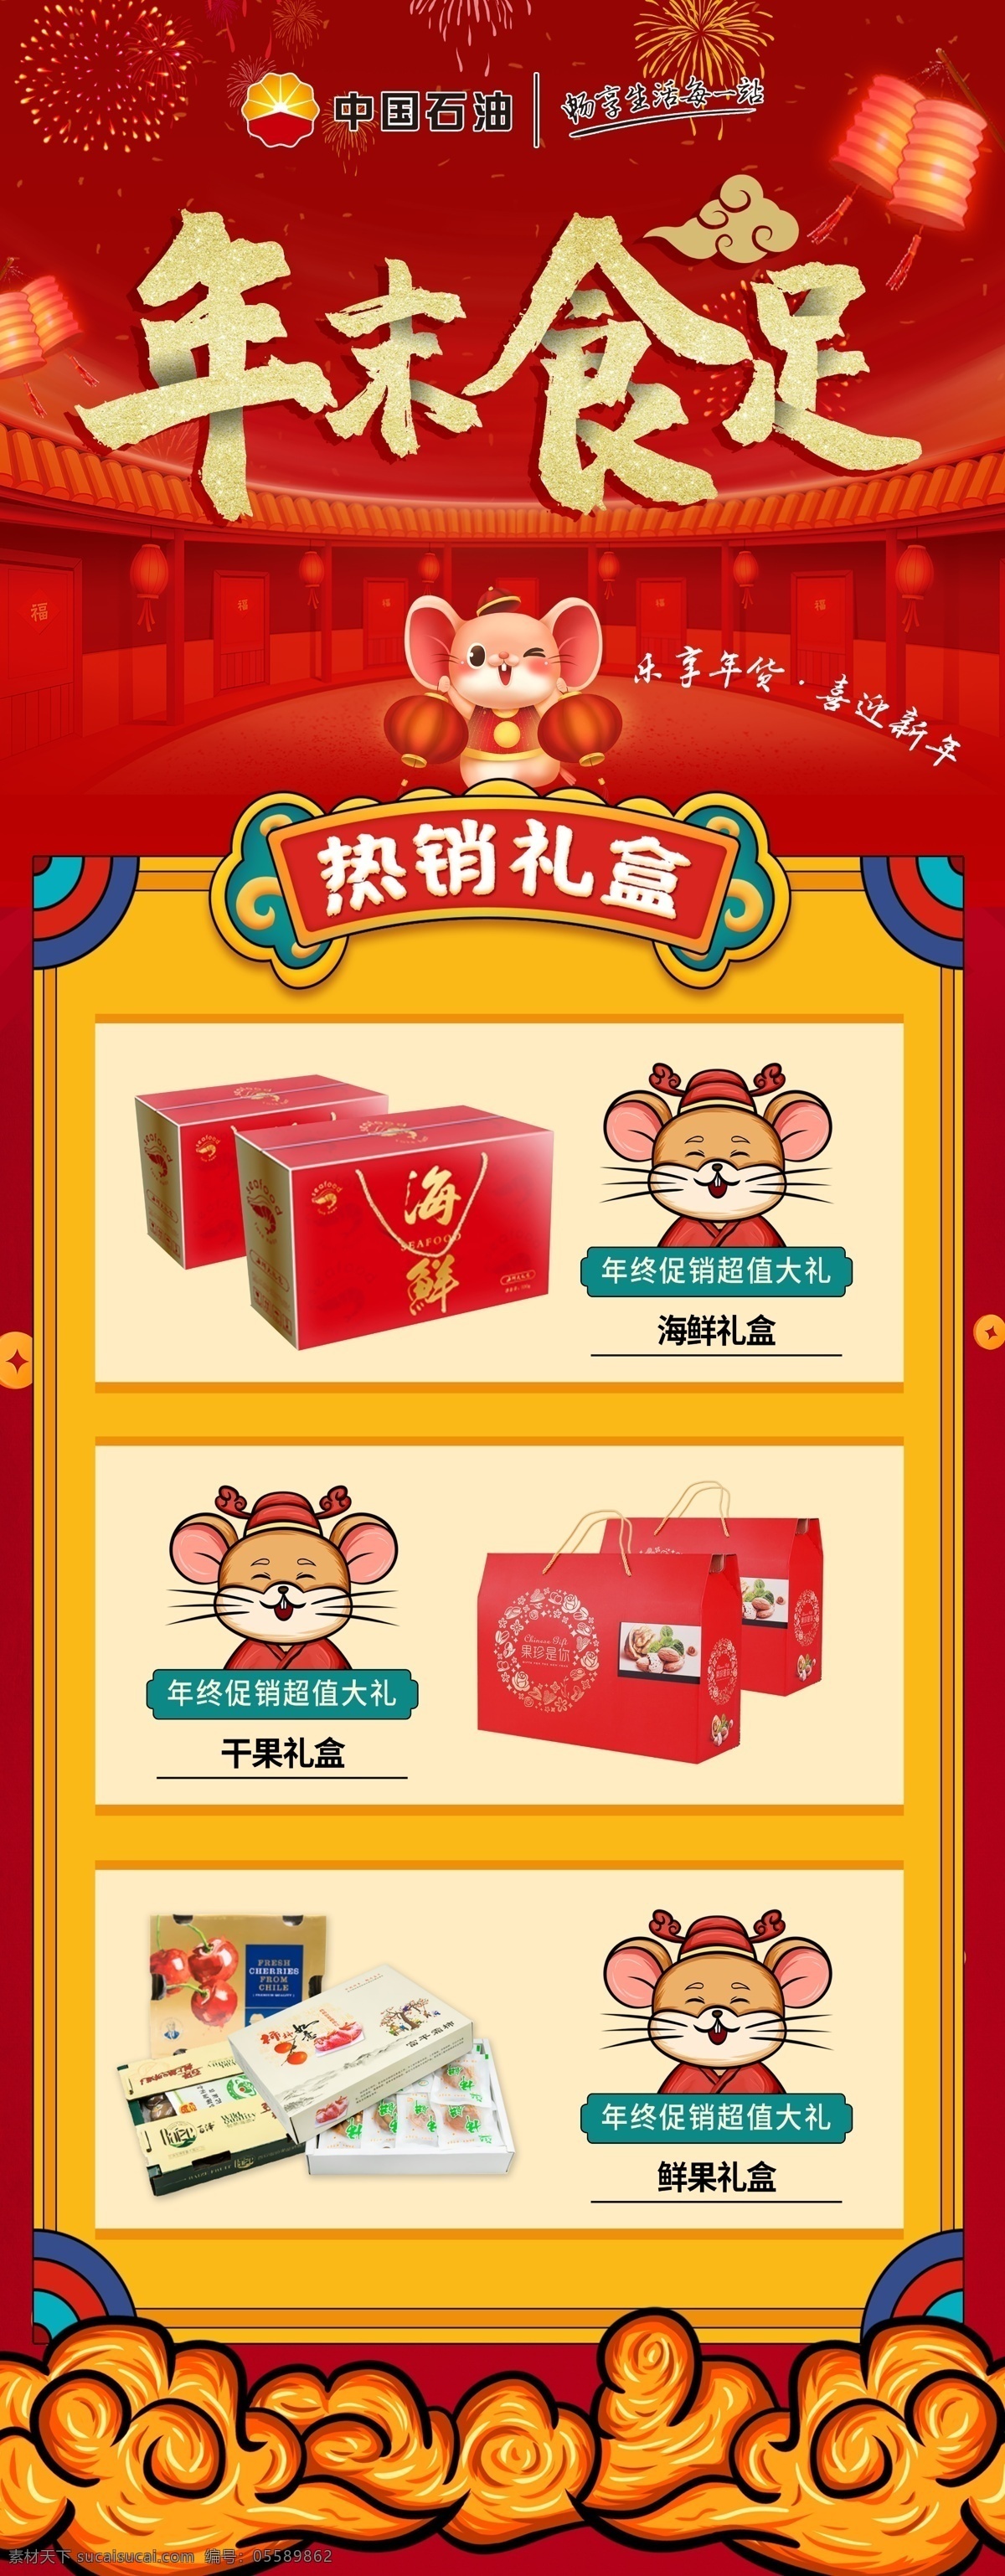 年末促销展架 年末食足 展架 红色 鼠年 2020 年货 礼盒